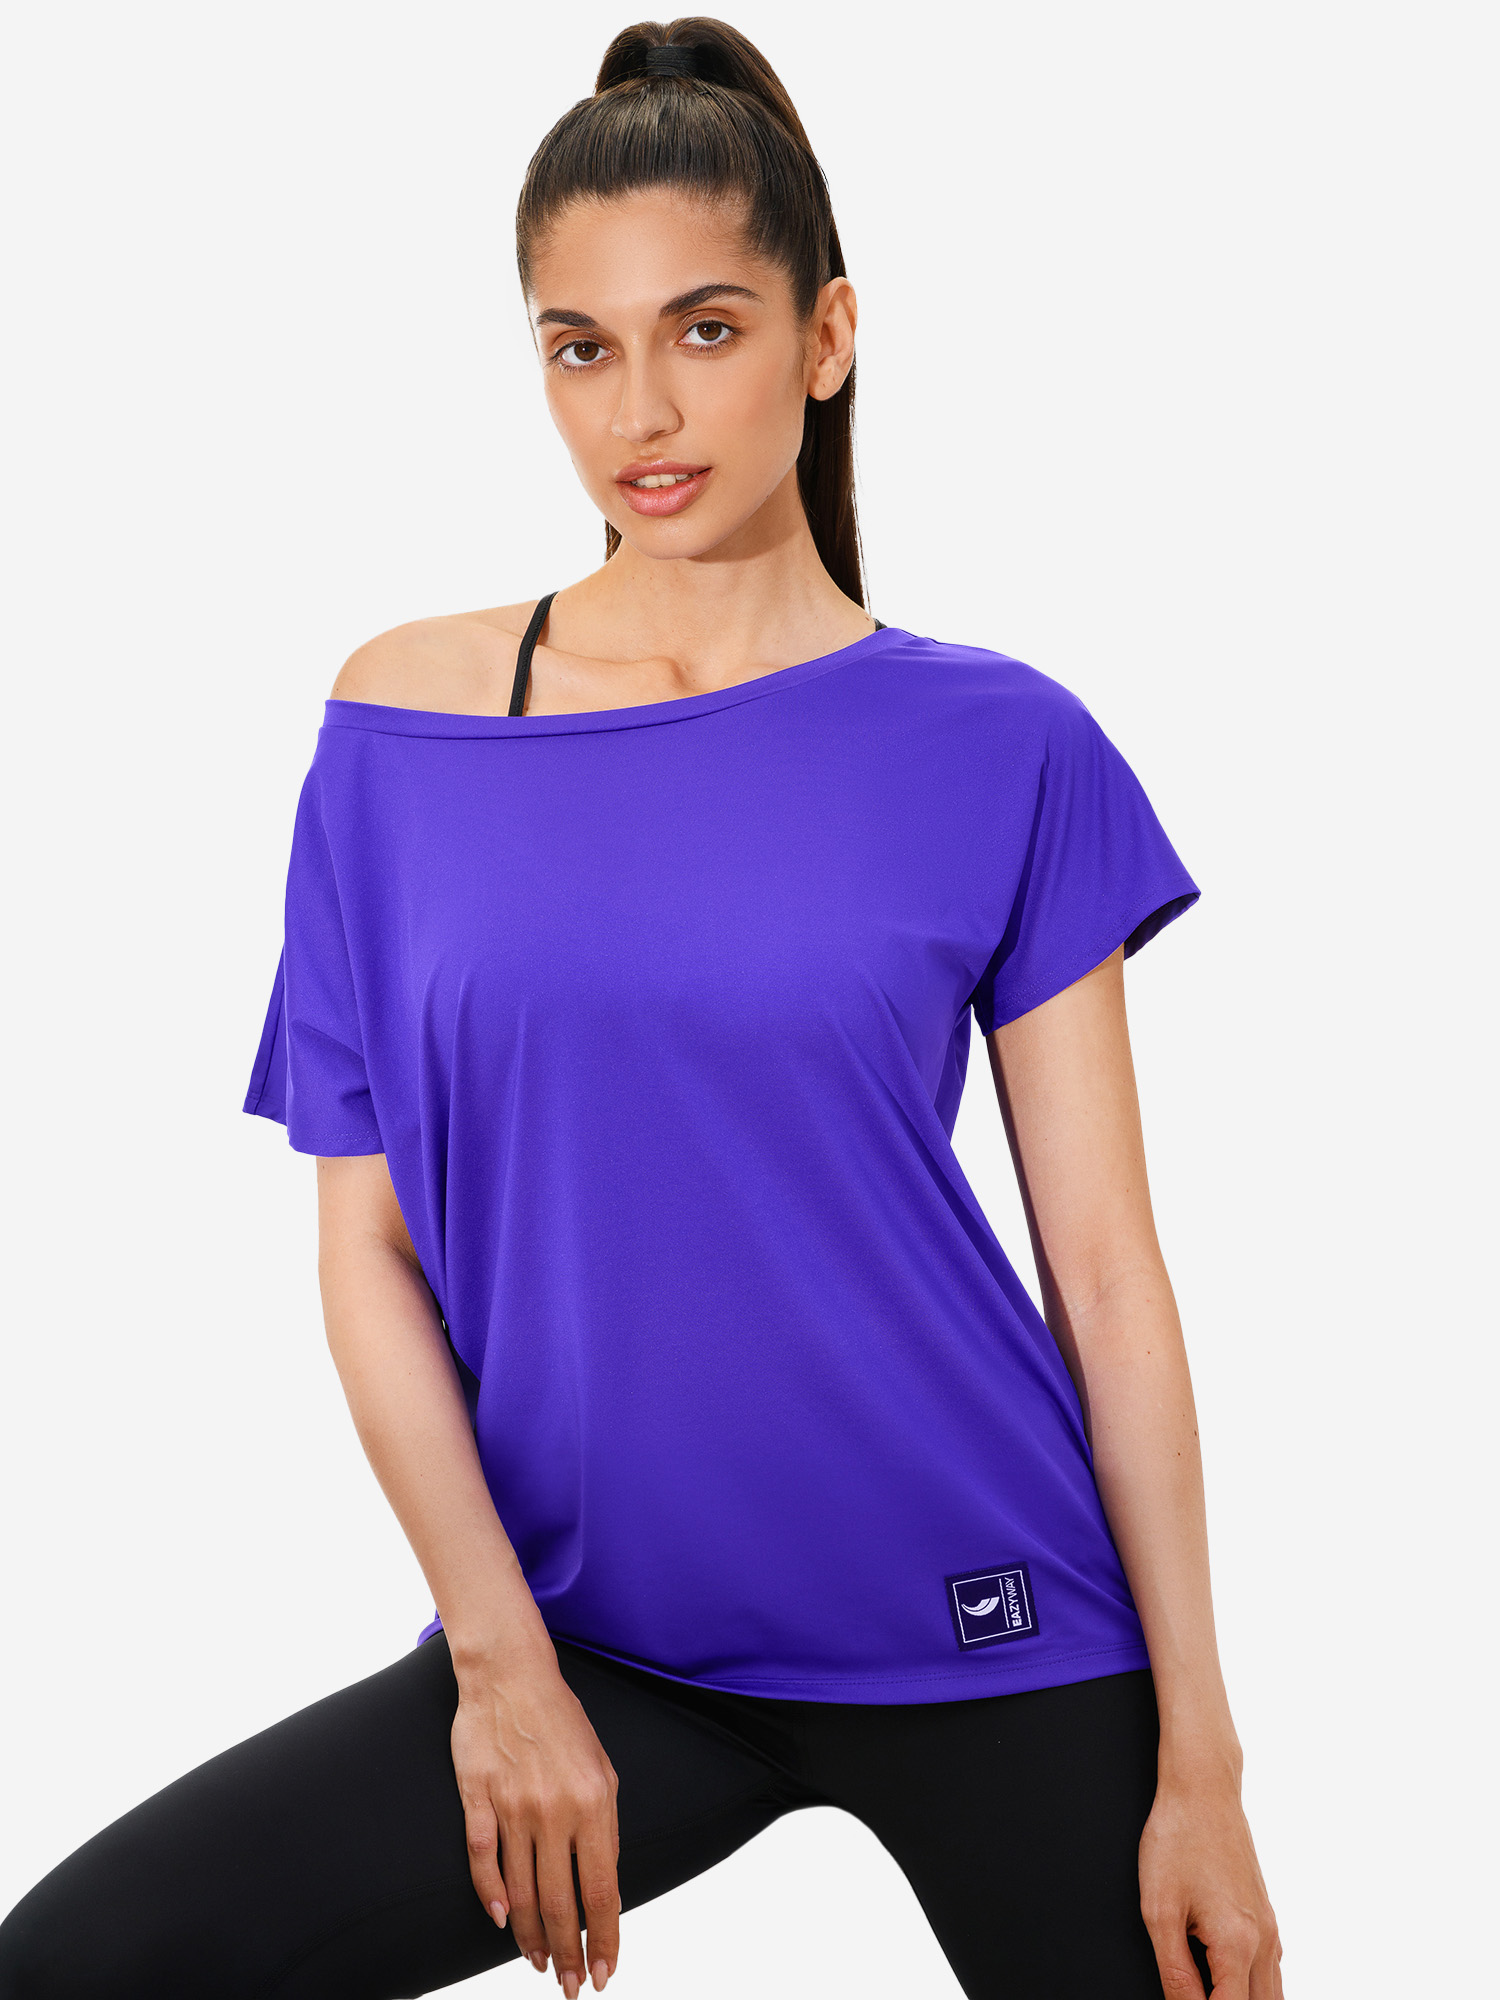 Женская удлиненная футболка футболка EAZYWAY, Фиолетовый